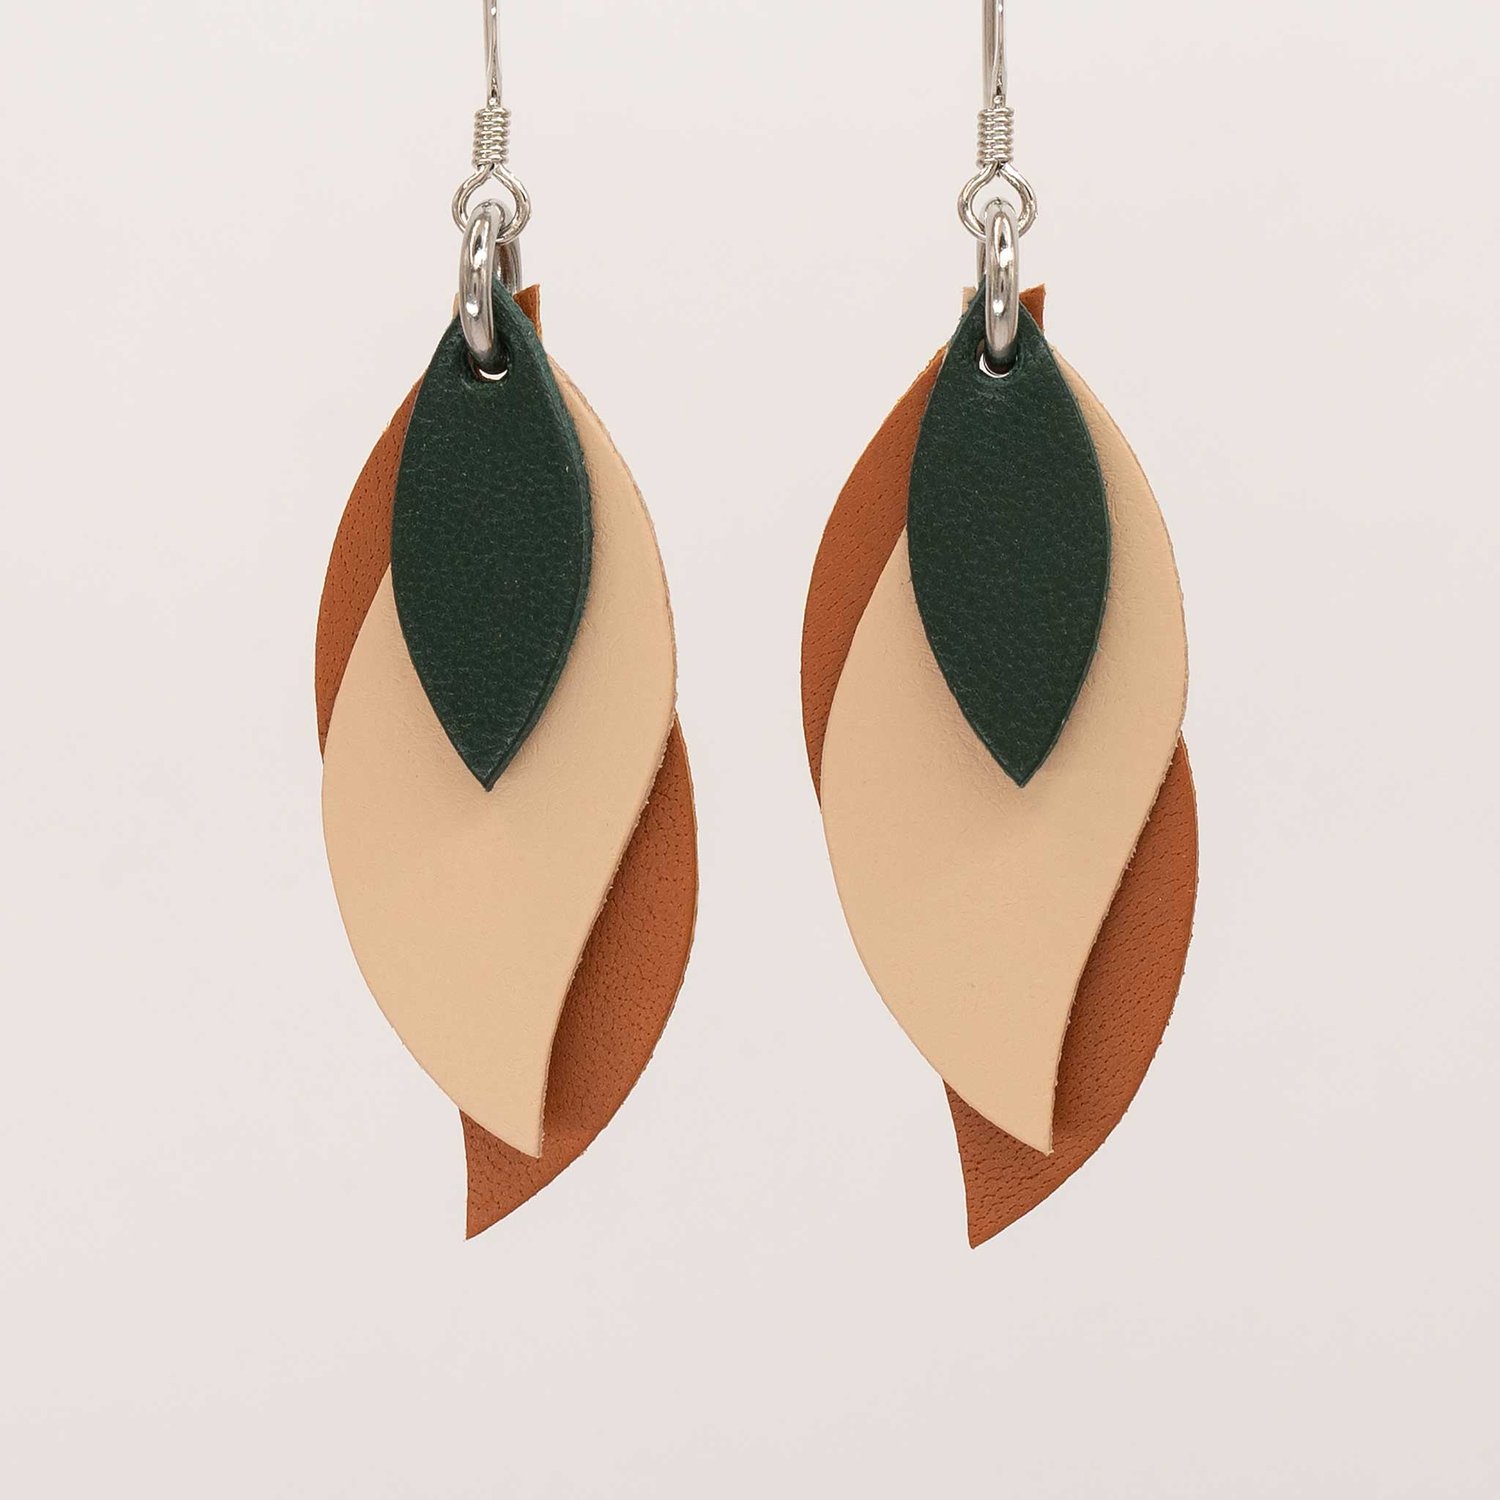 Image of Handmade Australian leather leaf earrings - Dark green, natural, saddletan